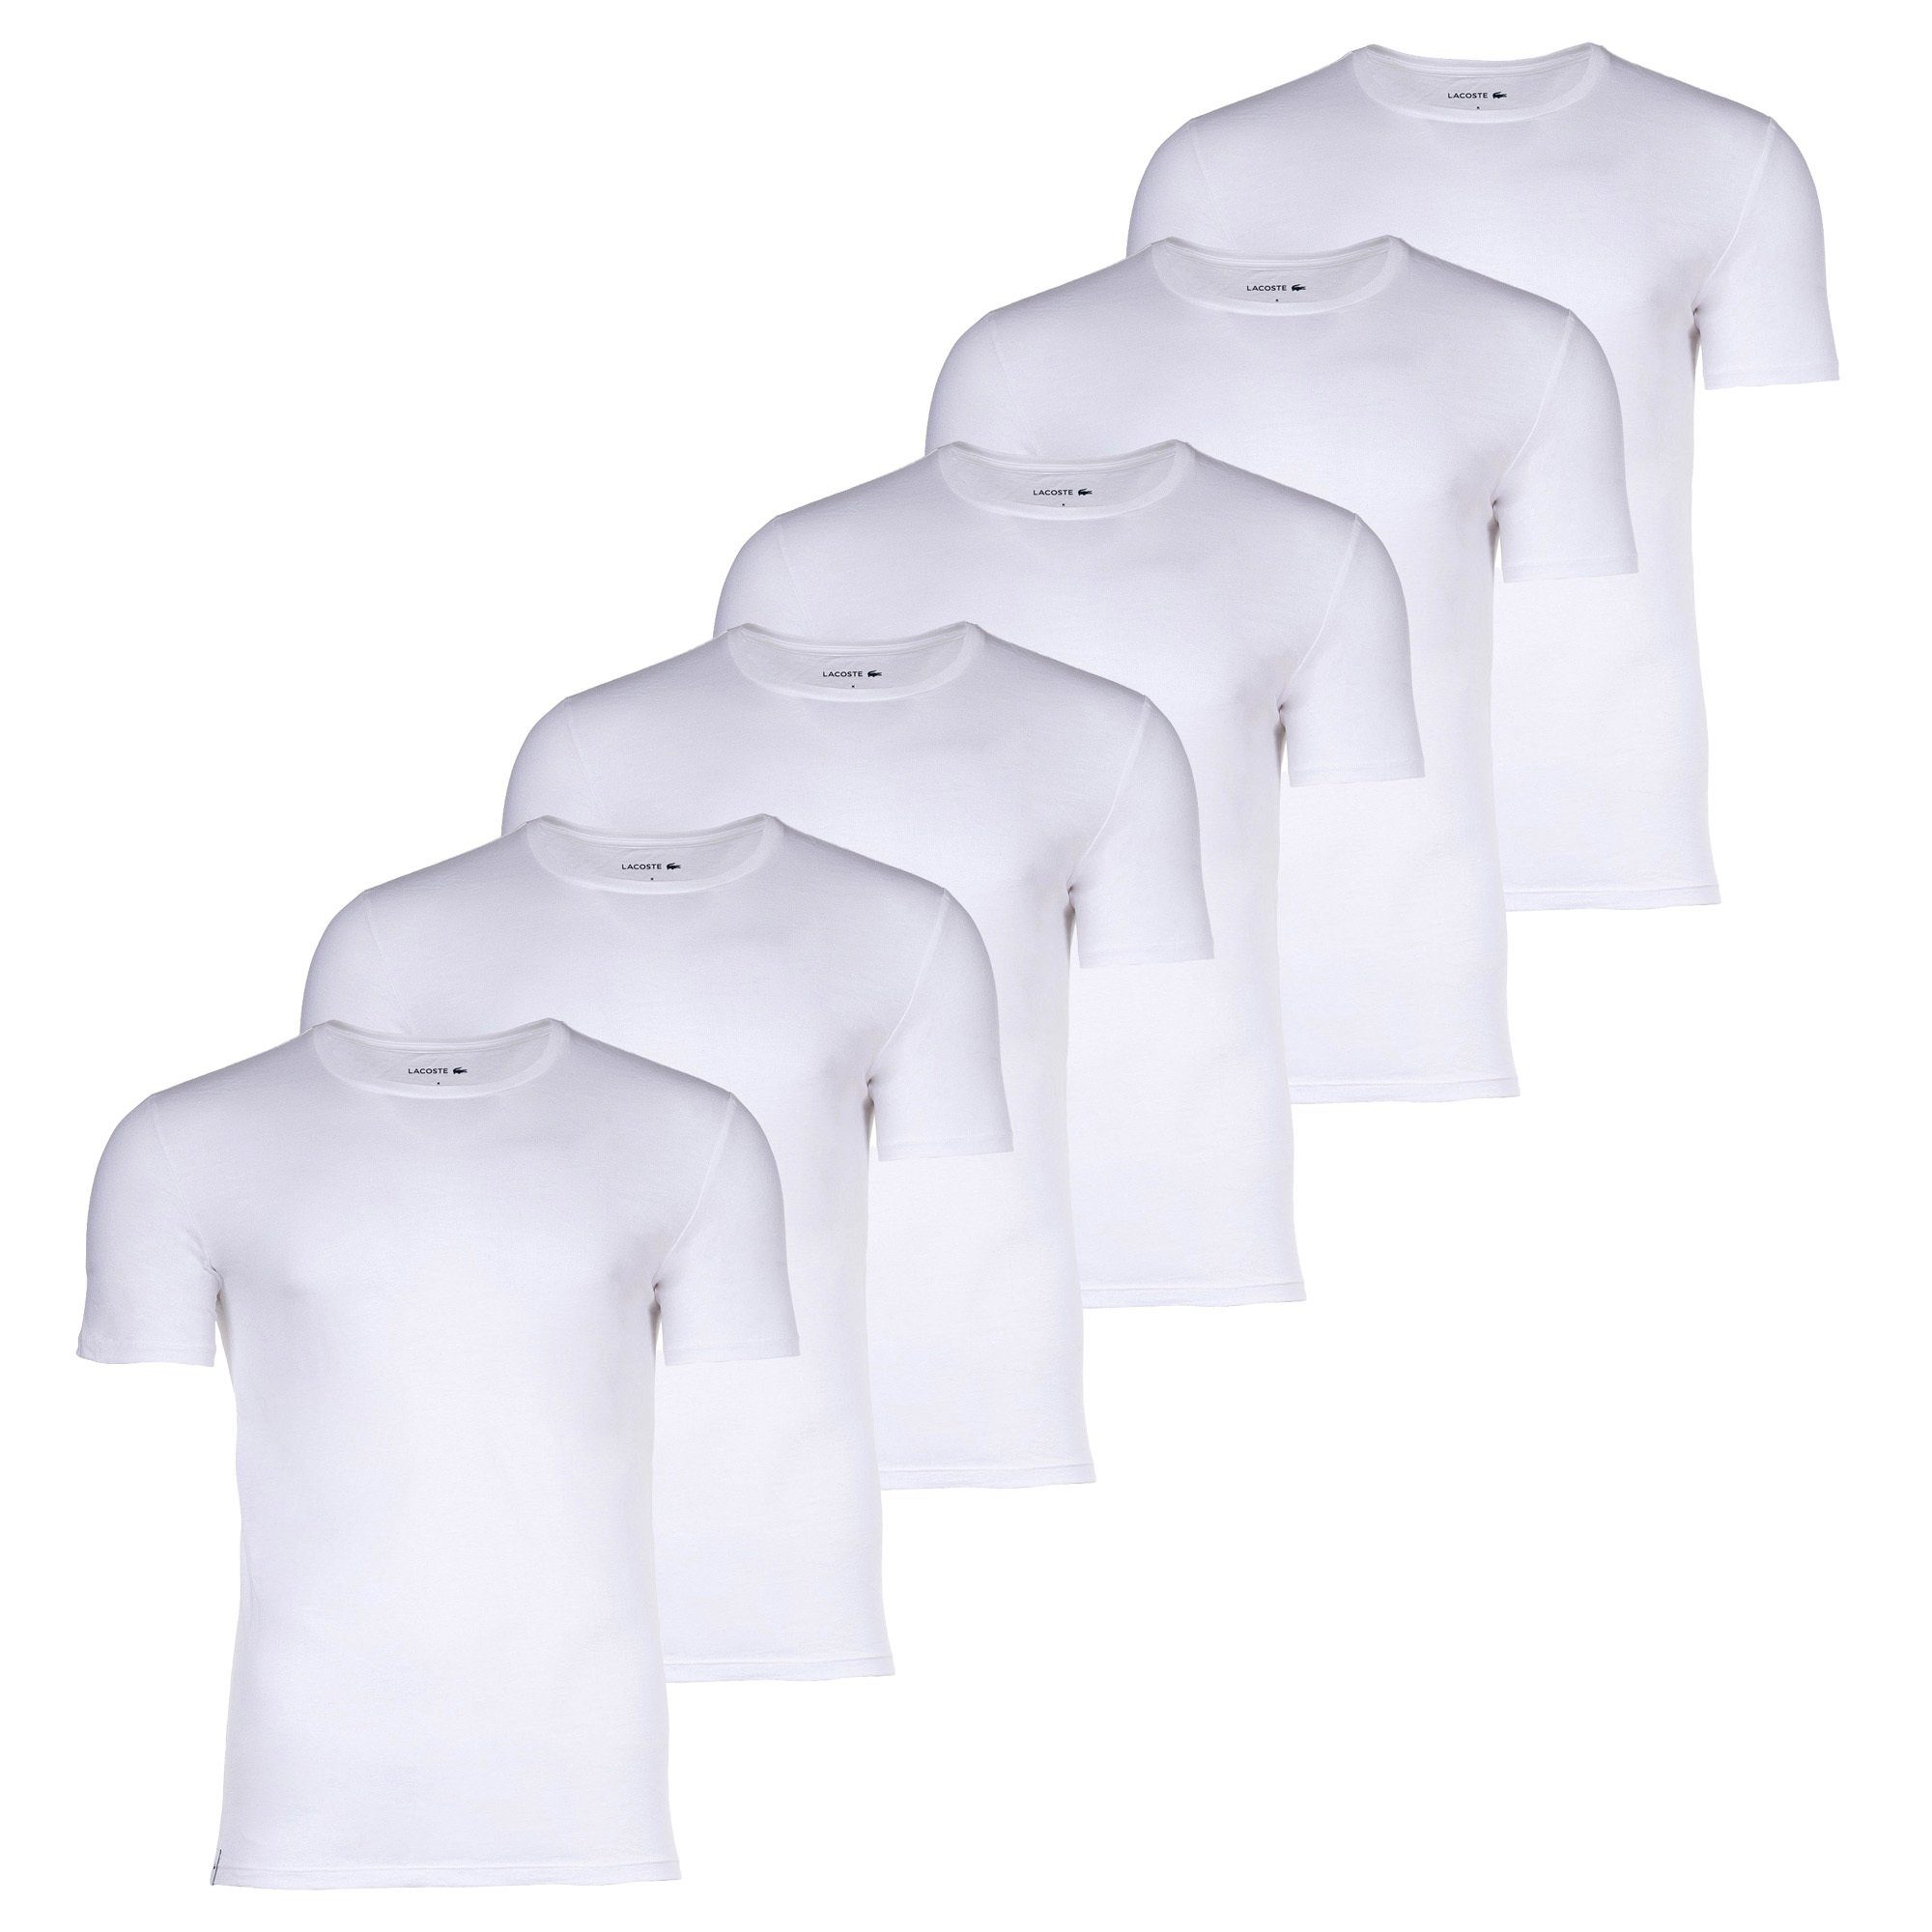 Weiß Essentials, T-Shirts, 6er T-Shirt Pack Rundhals Lacoste Herren -